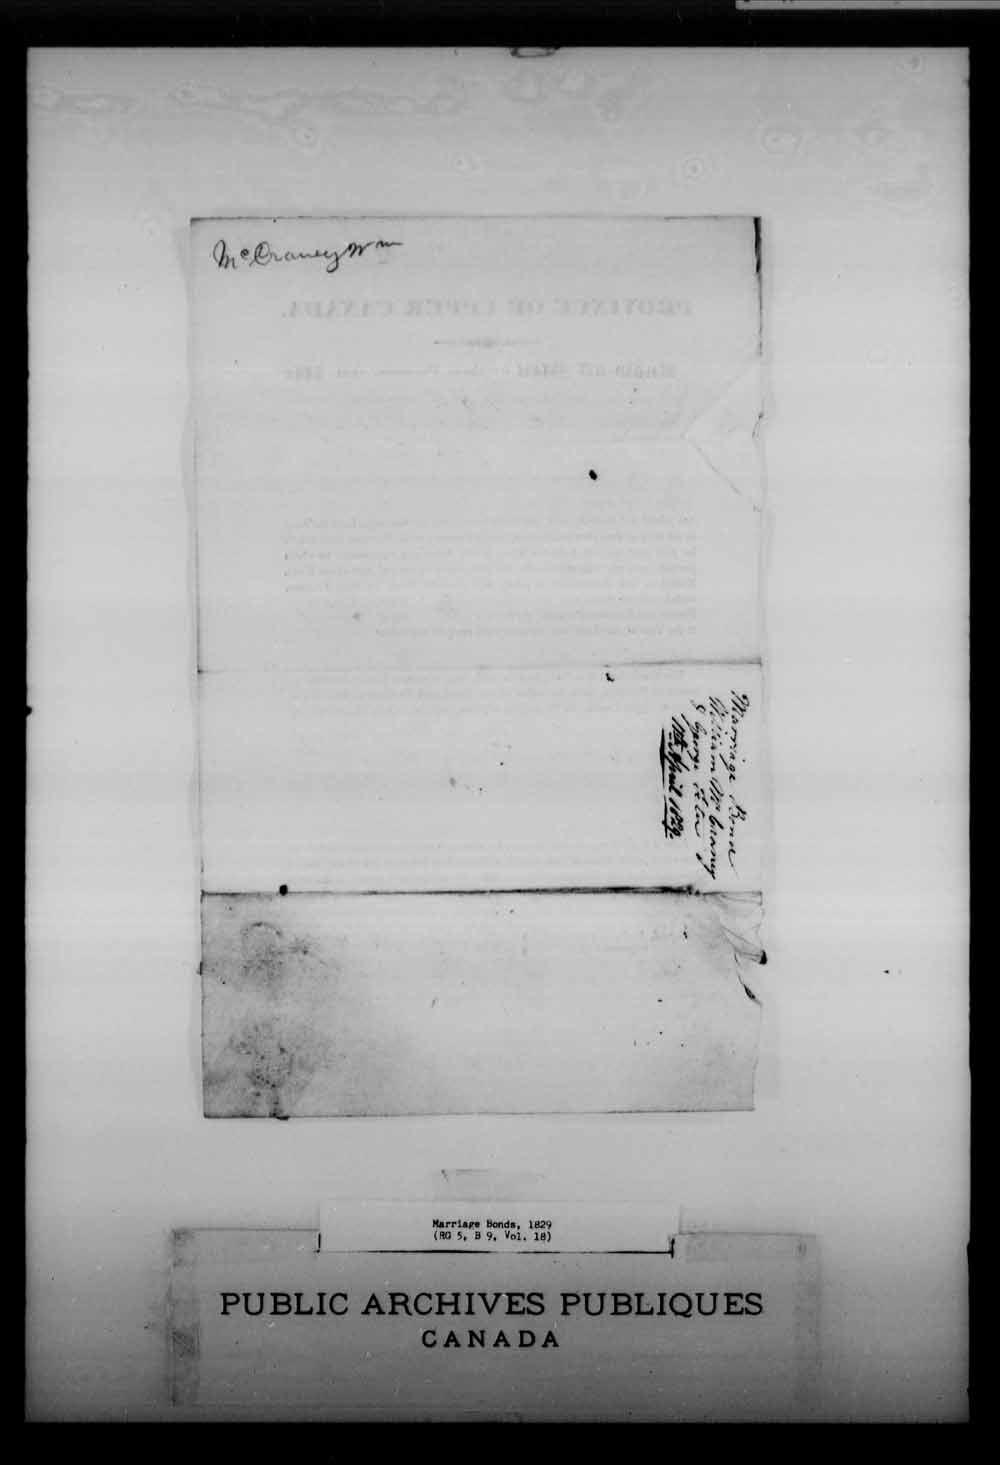 Page numérisé de Cautionnements de mariages pour le Haut-Canada et le Bas-Canada (1779-1865) pour l'image numéro: e008215801